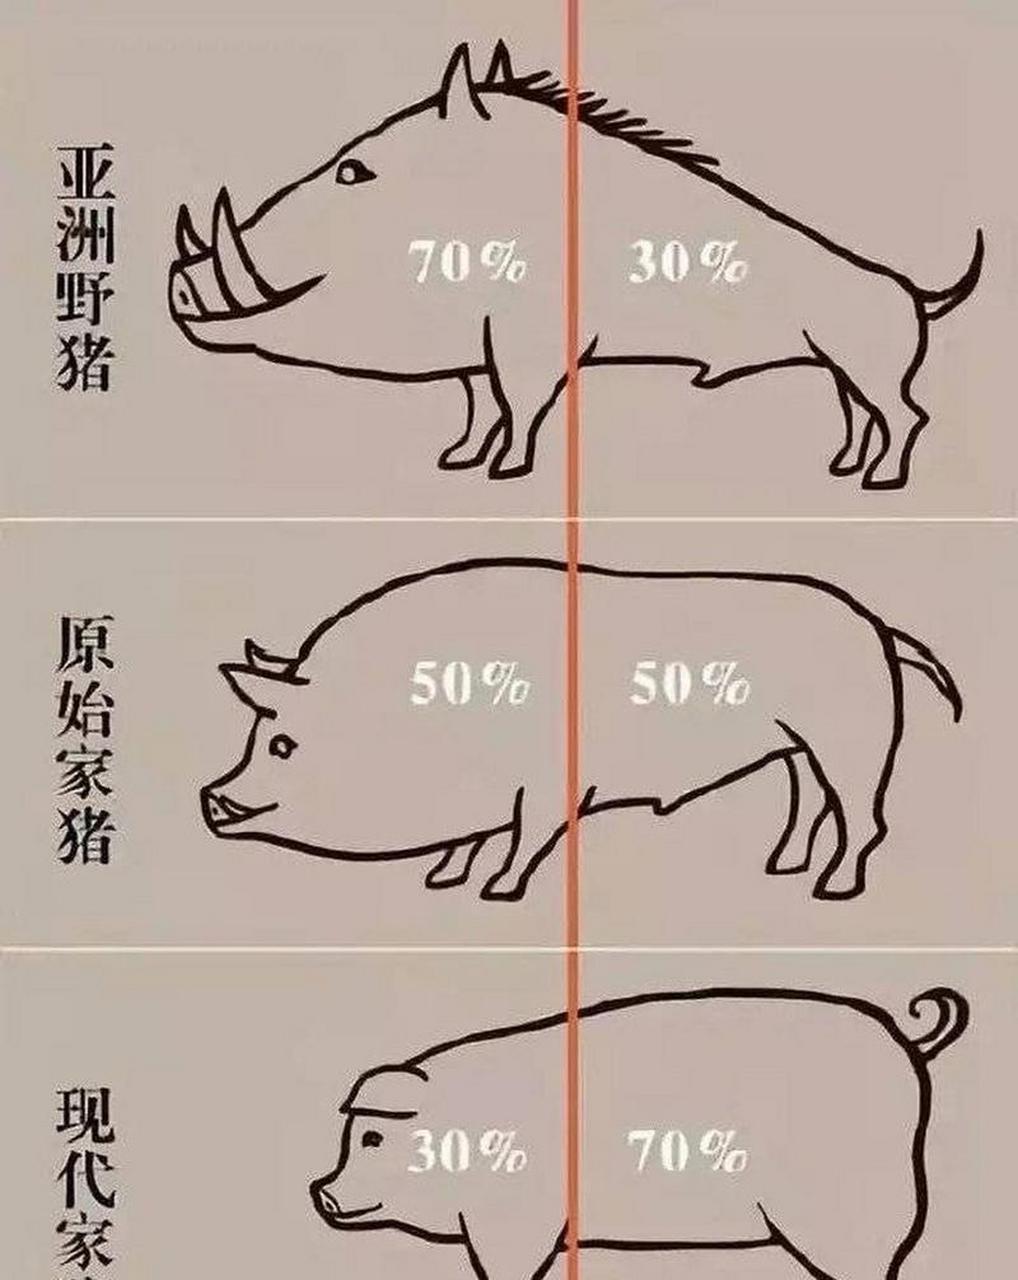 猪的演变过程图片